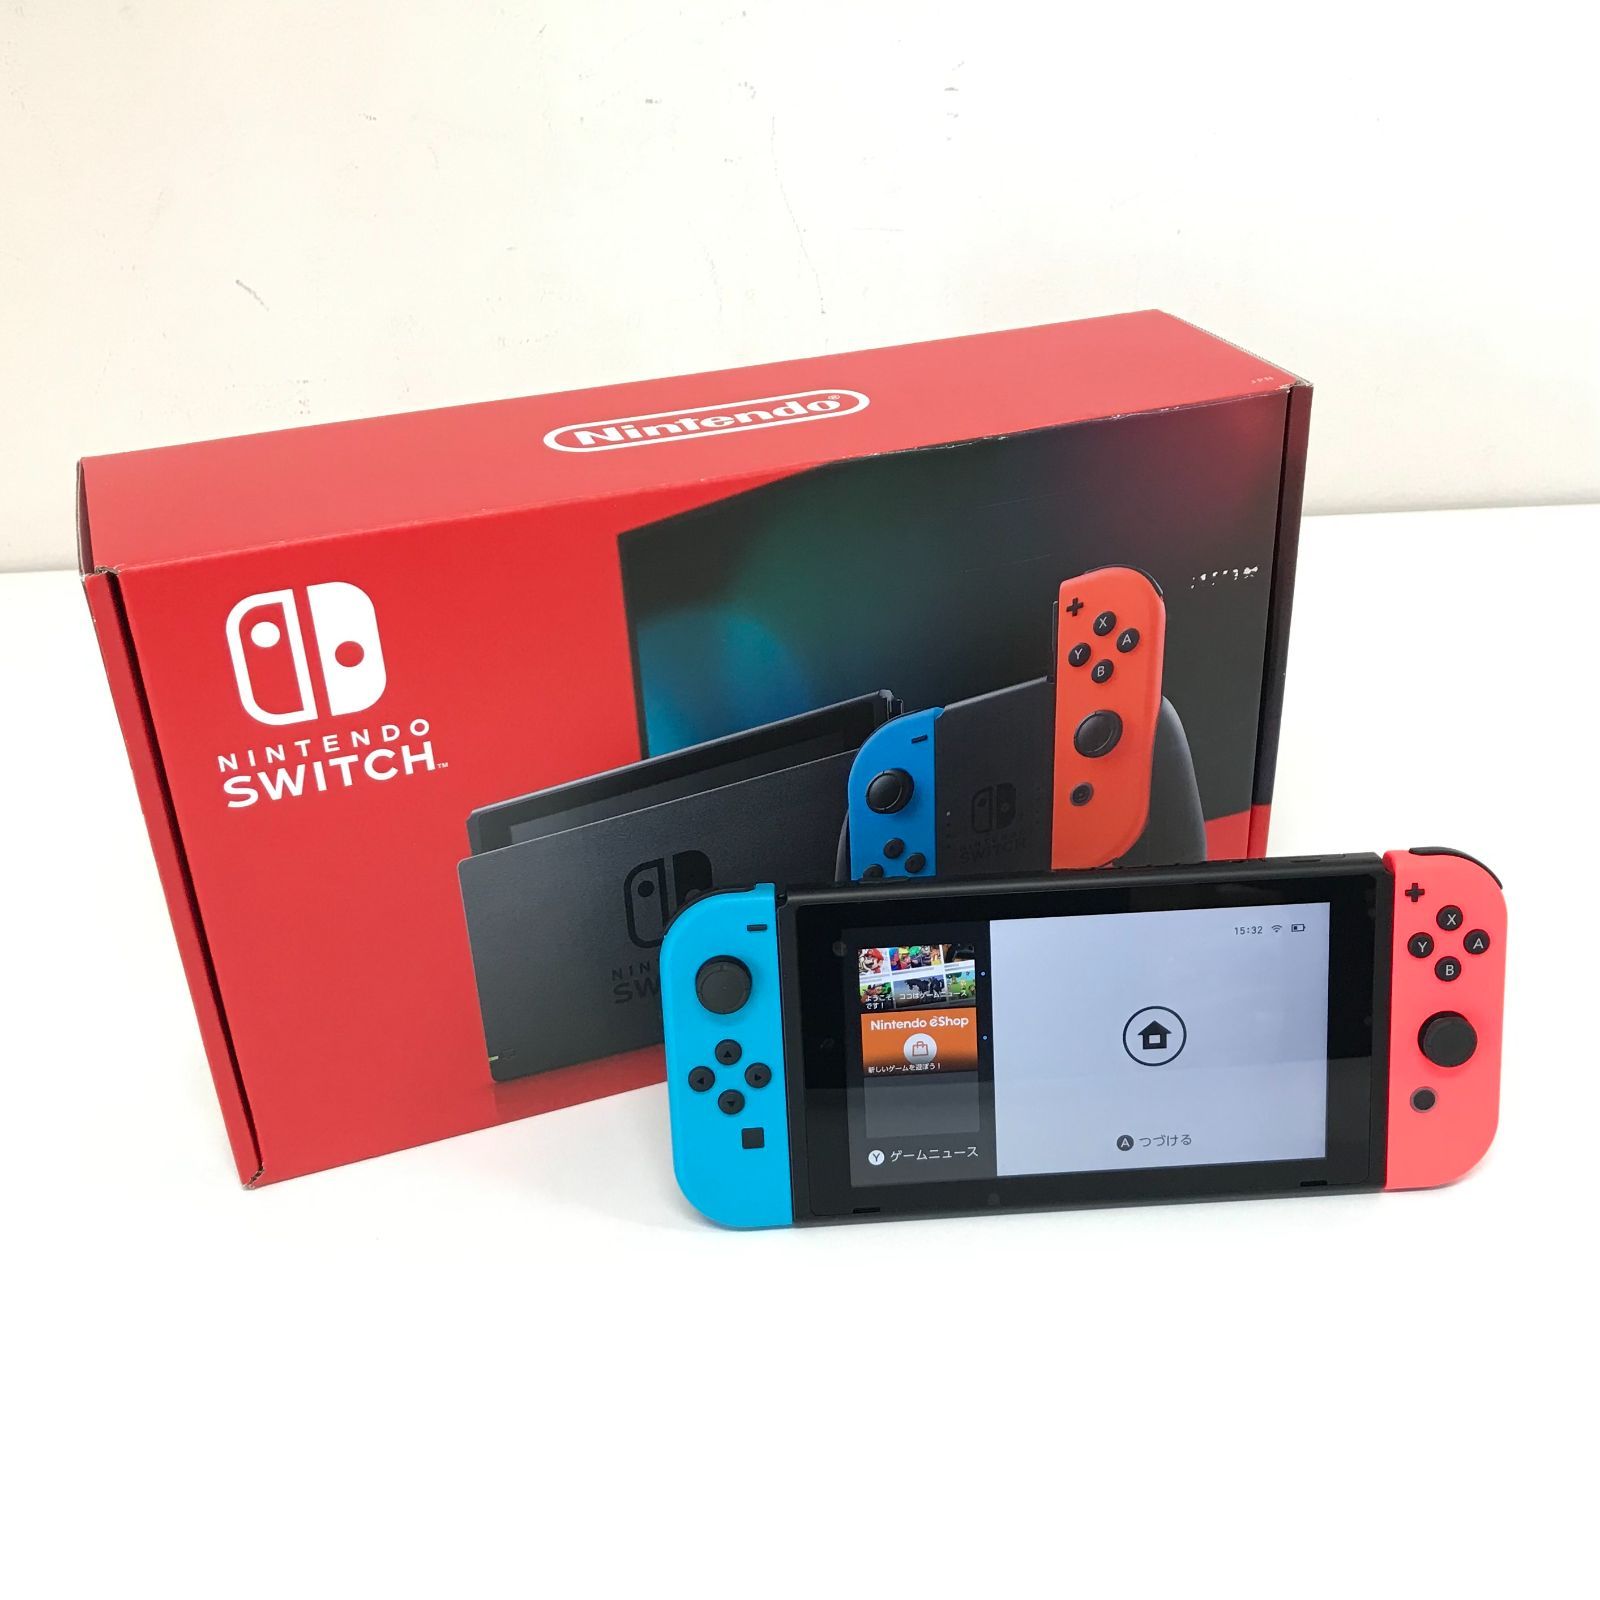 θ【未使用品】Nintendo Switch 新型 ネオンブルー/ネオンレッド - 買取 ...